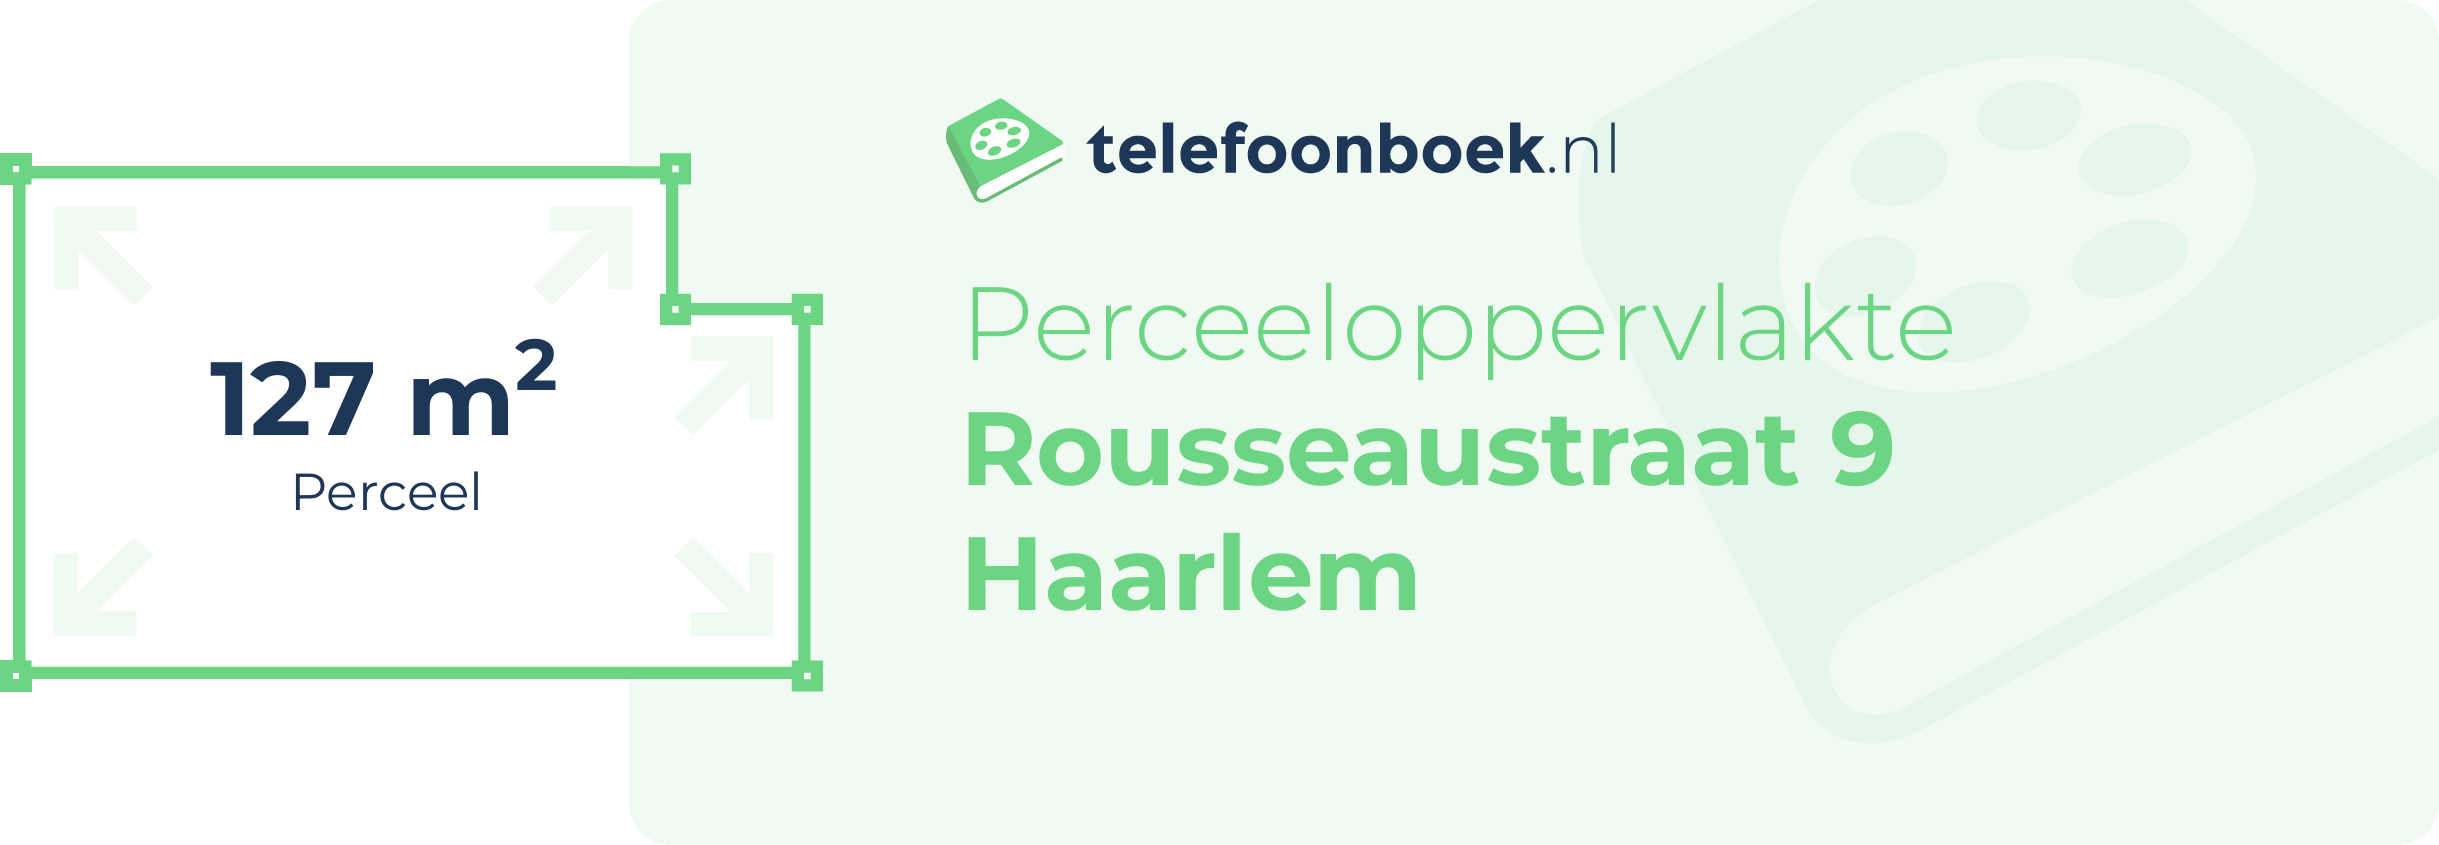 Perceeloppervlakte Rousseaustraat 9 Haarlem